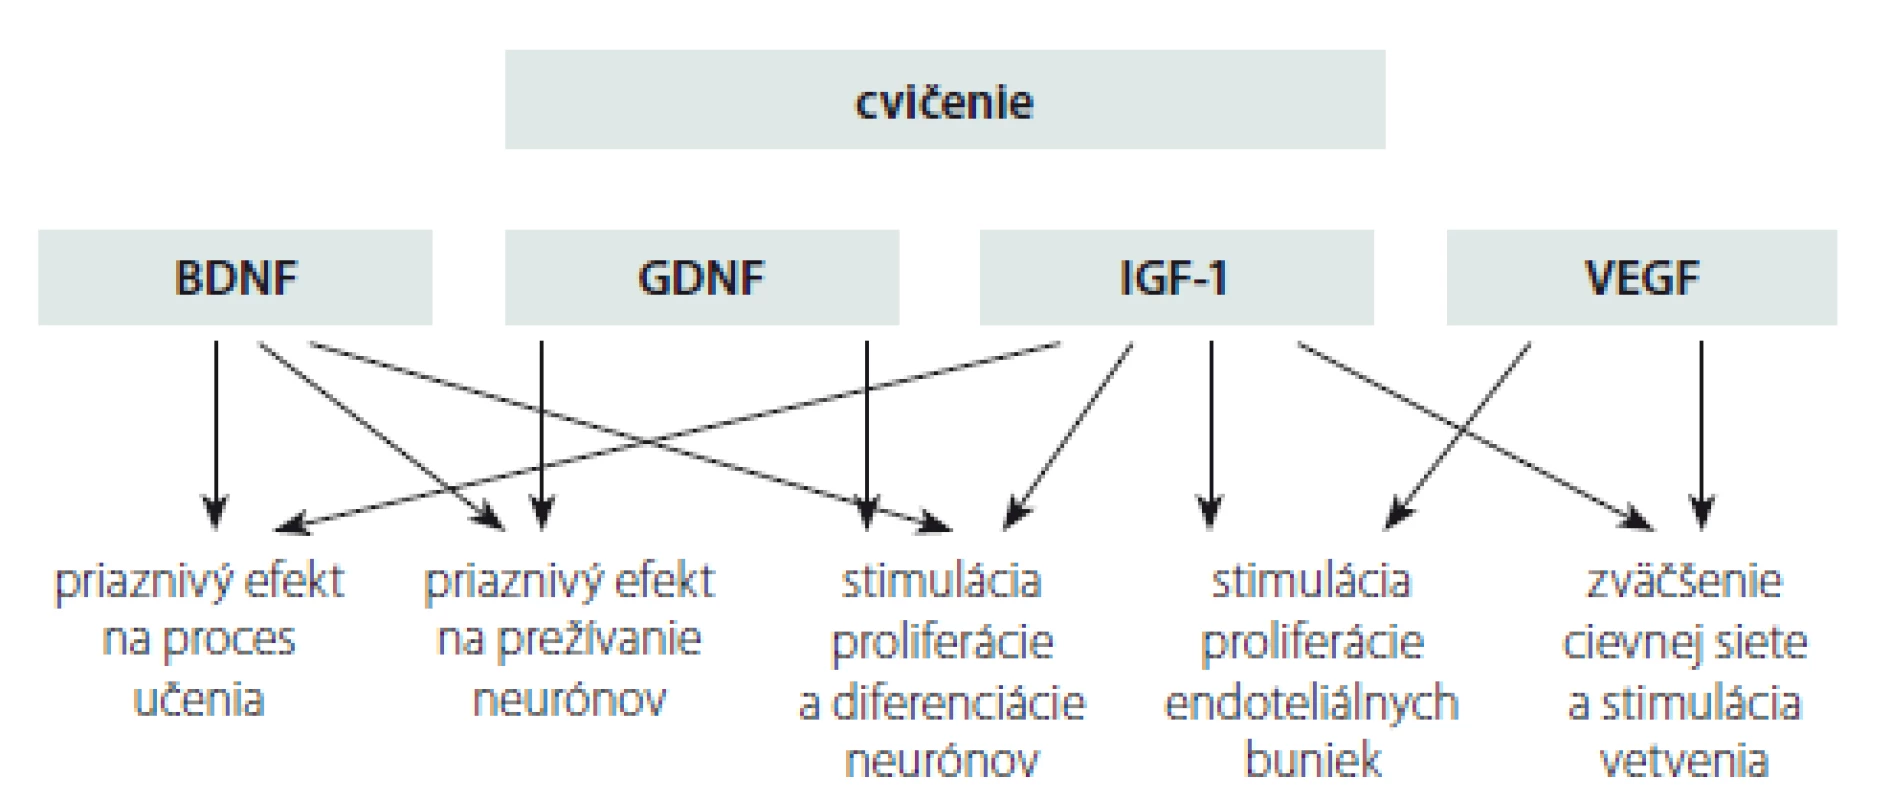 Prehľad účinkov cvičenia na mozog pacienta s Parkinsonovou chorobou, ktoré sú
sprostredkované rastovými faktormi [69].
BDNF – mozgový neurotrofický faktor; GDNF – neurotrofický faktor gliových buniek; IGF-1 –
inzulínu podobný rastový faktor; VEGF – vaskulárny endoteliálny rastový faktor<br>
Fig. 2. Overview of the exercise effects on the brain in a patient with Parkinson´s disease
mediated by growth factors [69].
BDNF – brain-derived neurotrophic factor; GDNF – glial cell line-derived neurotrophic factor;
IGF-1 – insulin-like growth factor; VEGF – vascular endothelial growth factor